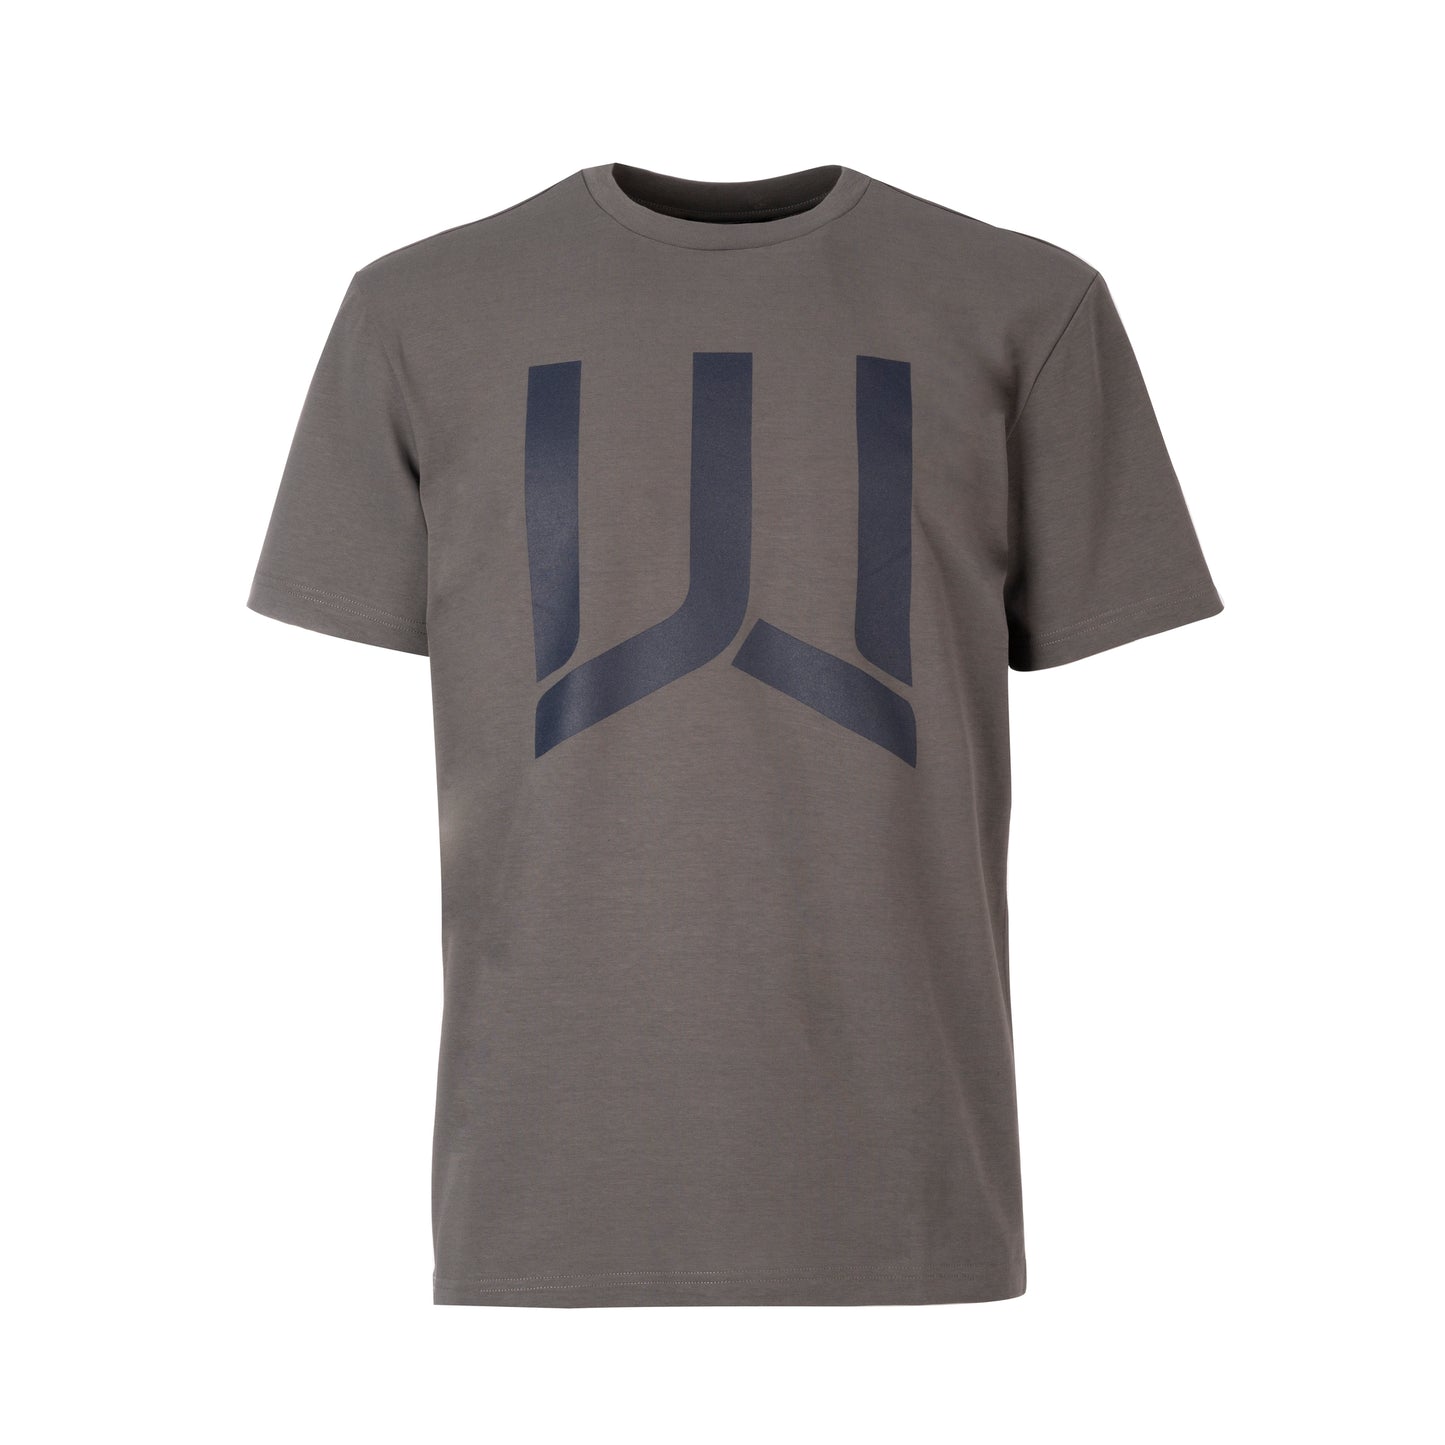 WOODS - T-shirt Big Logo - I migliori prodotti Made in Italy da Fiera di Monza Shop - Solo 49.90€! Acquista subito su Fiera di Monza Shop!